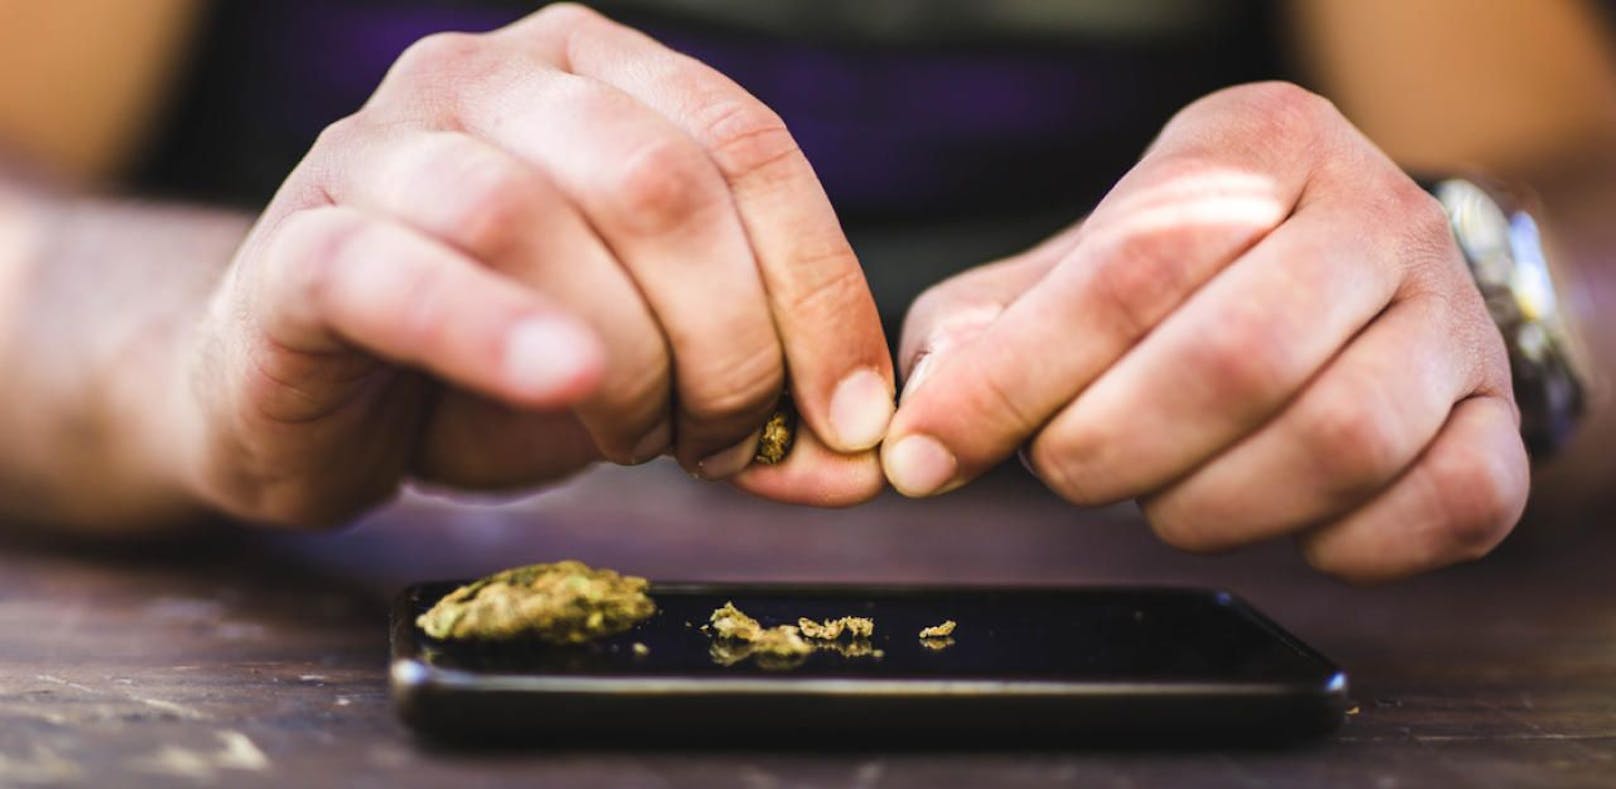 Ein junger Mann aus Vöcklabruck wurde erwischt, wie er Cannabis konsumierte. Ein Video auf seinem Handy brachte ihn aber in noch größere Schwierigkeiten. (Symbolfoto)